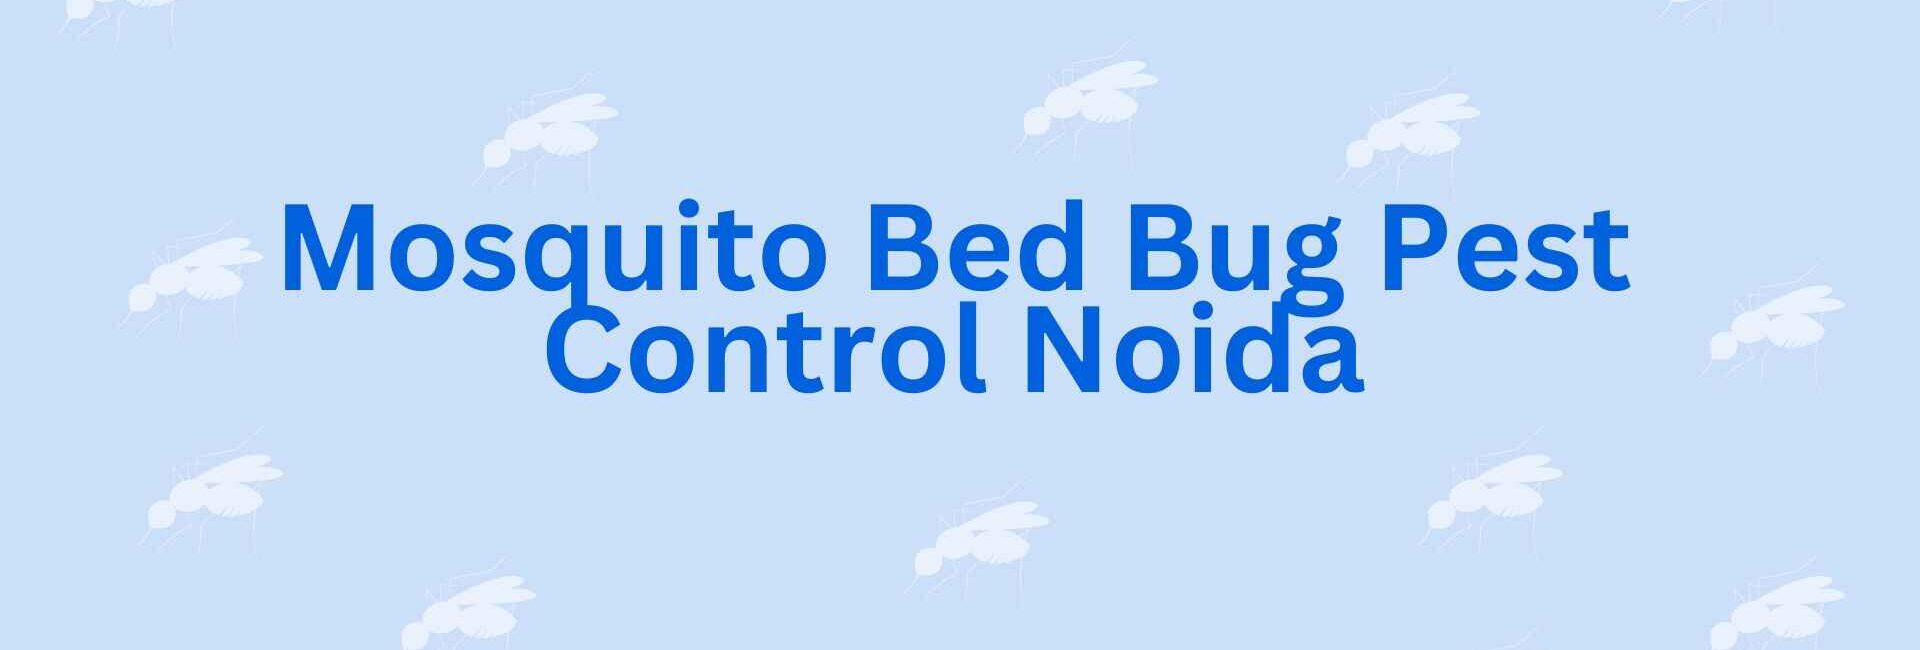 Mosquito Bed Bug Pest Control Noida - Pest Control in Noida